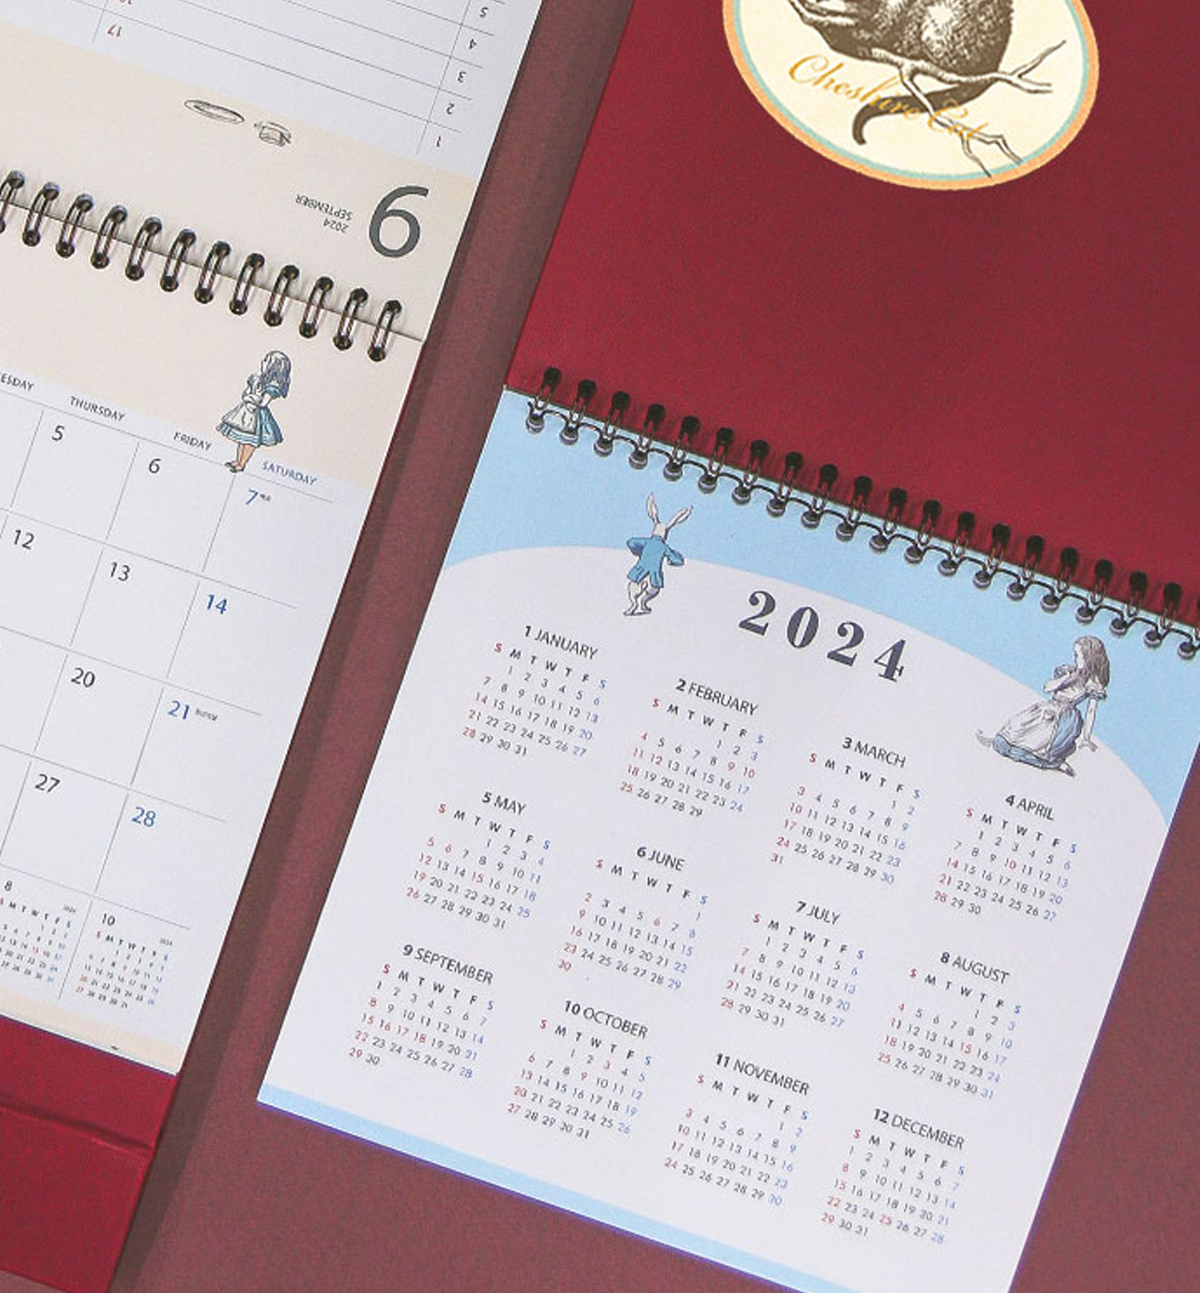 2024 Alice In Wonderland Desk Calendar